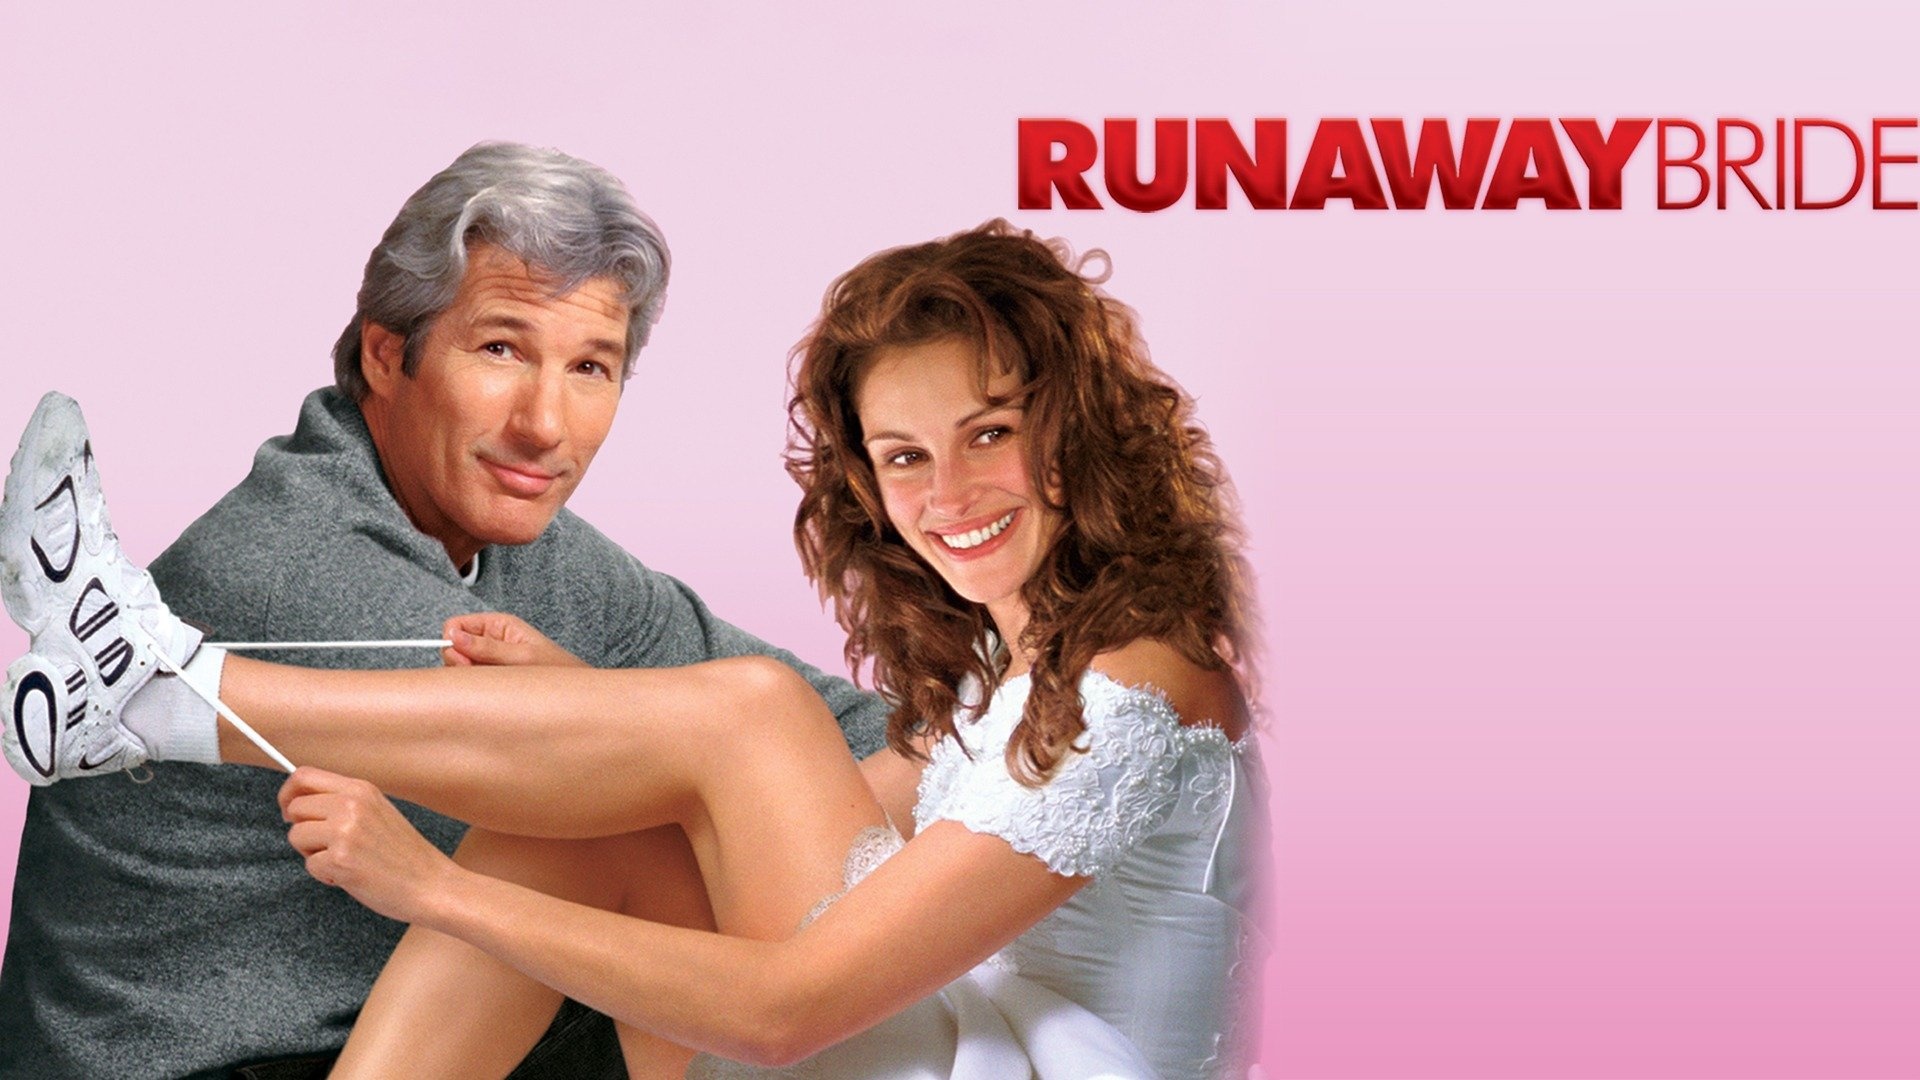 Runaway Bride movie, Watch online, Full movie, Streaming platforms, 1920x1080 Full HD Desktop